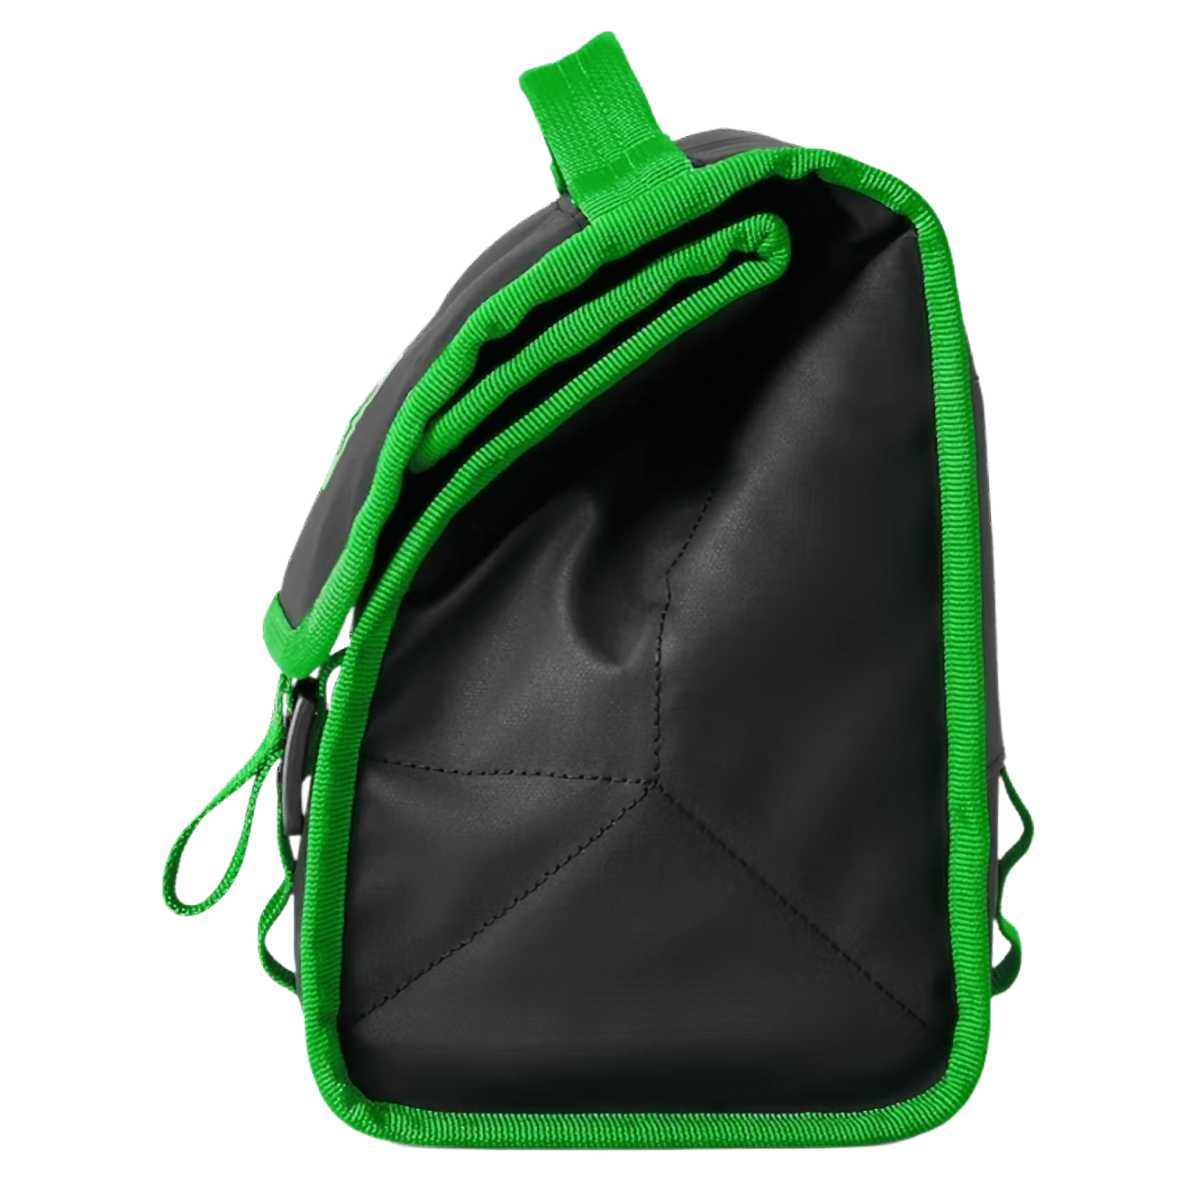 YETI®™ Daytrip Lunch Bag